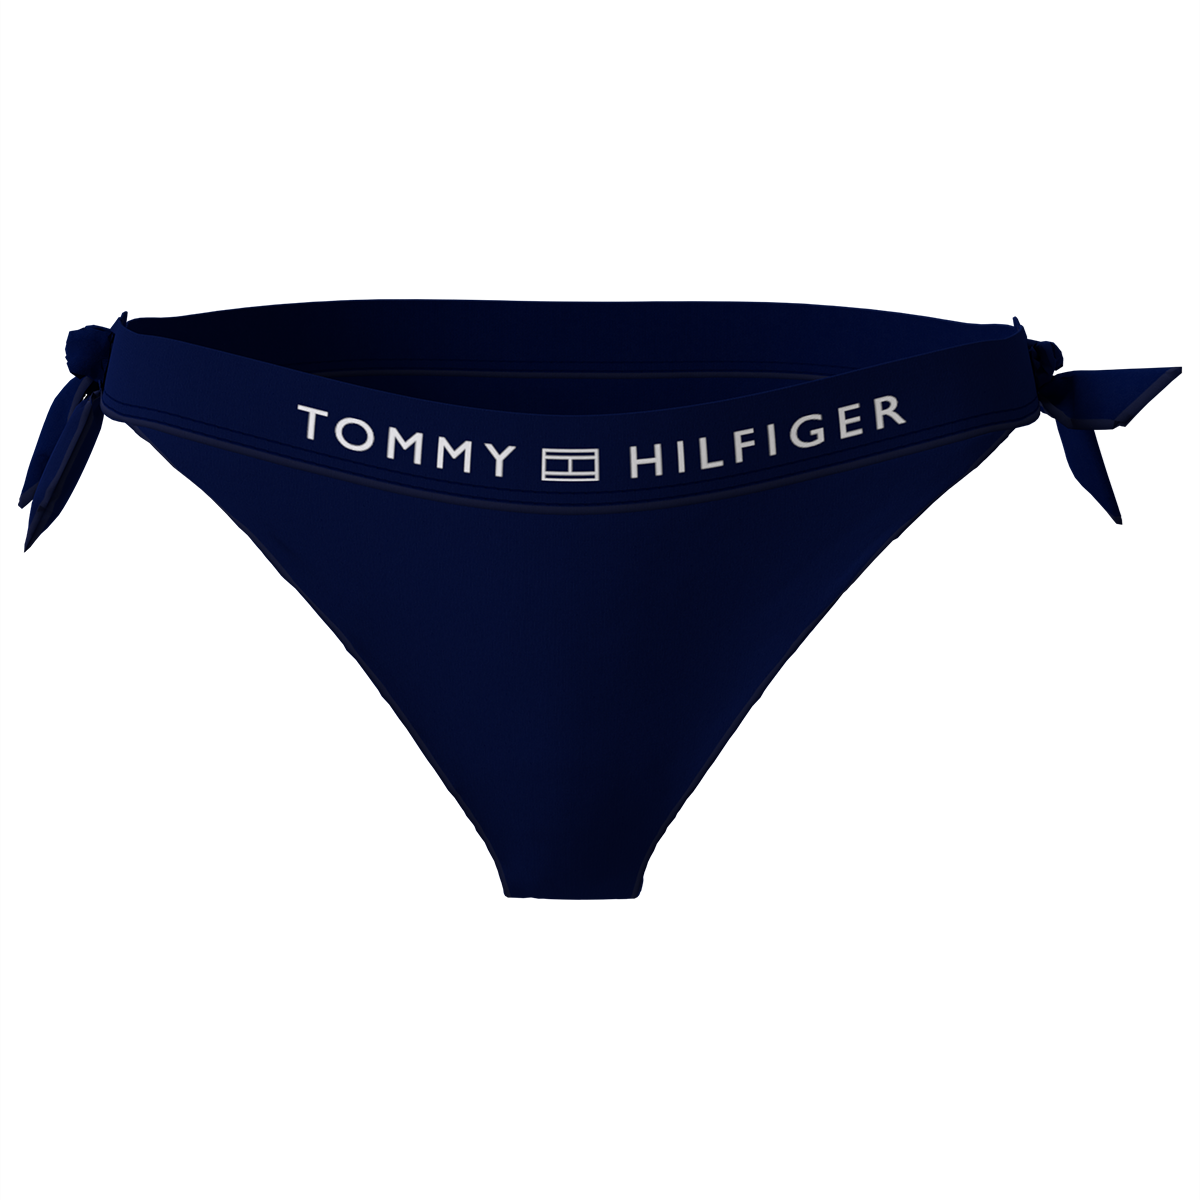 Tommy Hilfiger Lingeri Bikini Trusse, Farve: Sort, Størrelse: XL, Dame